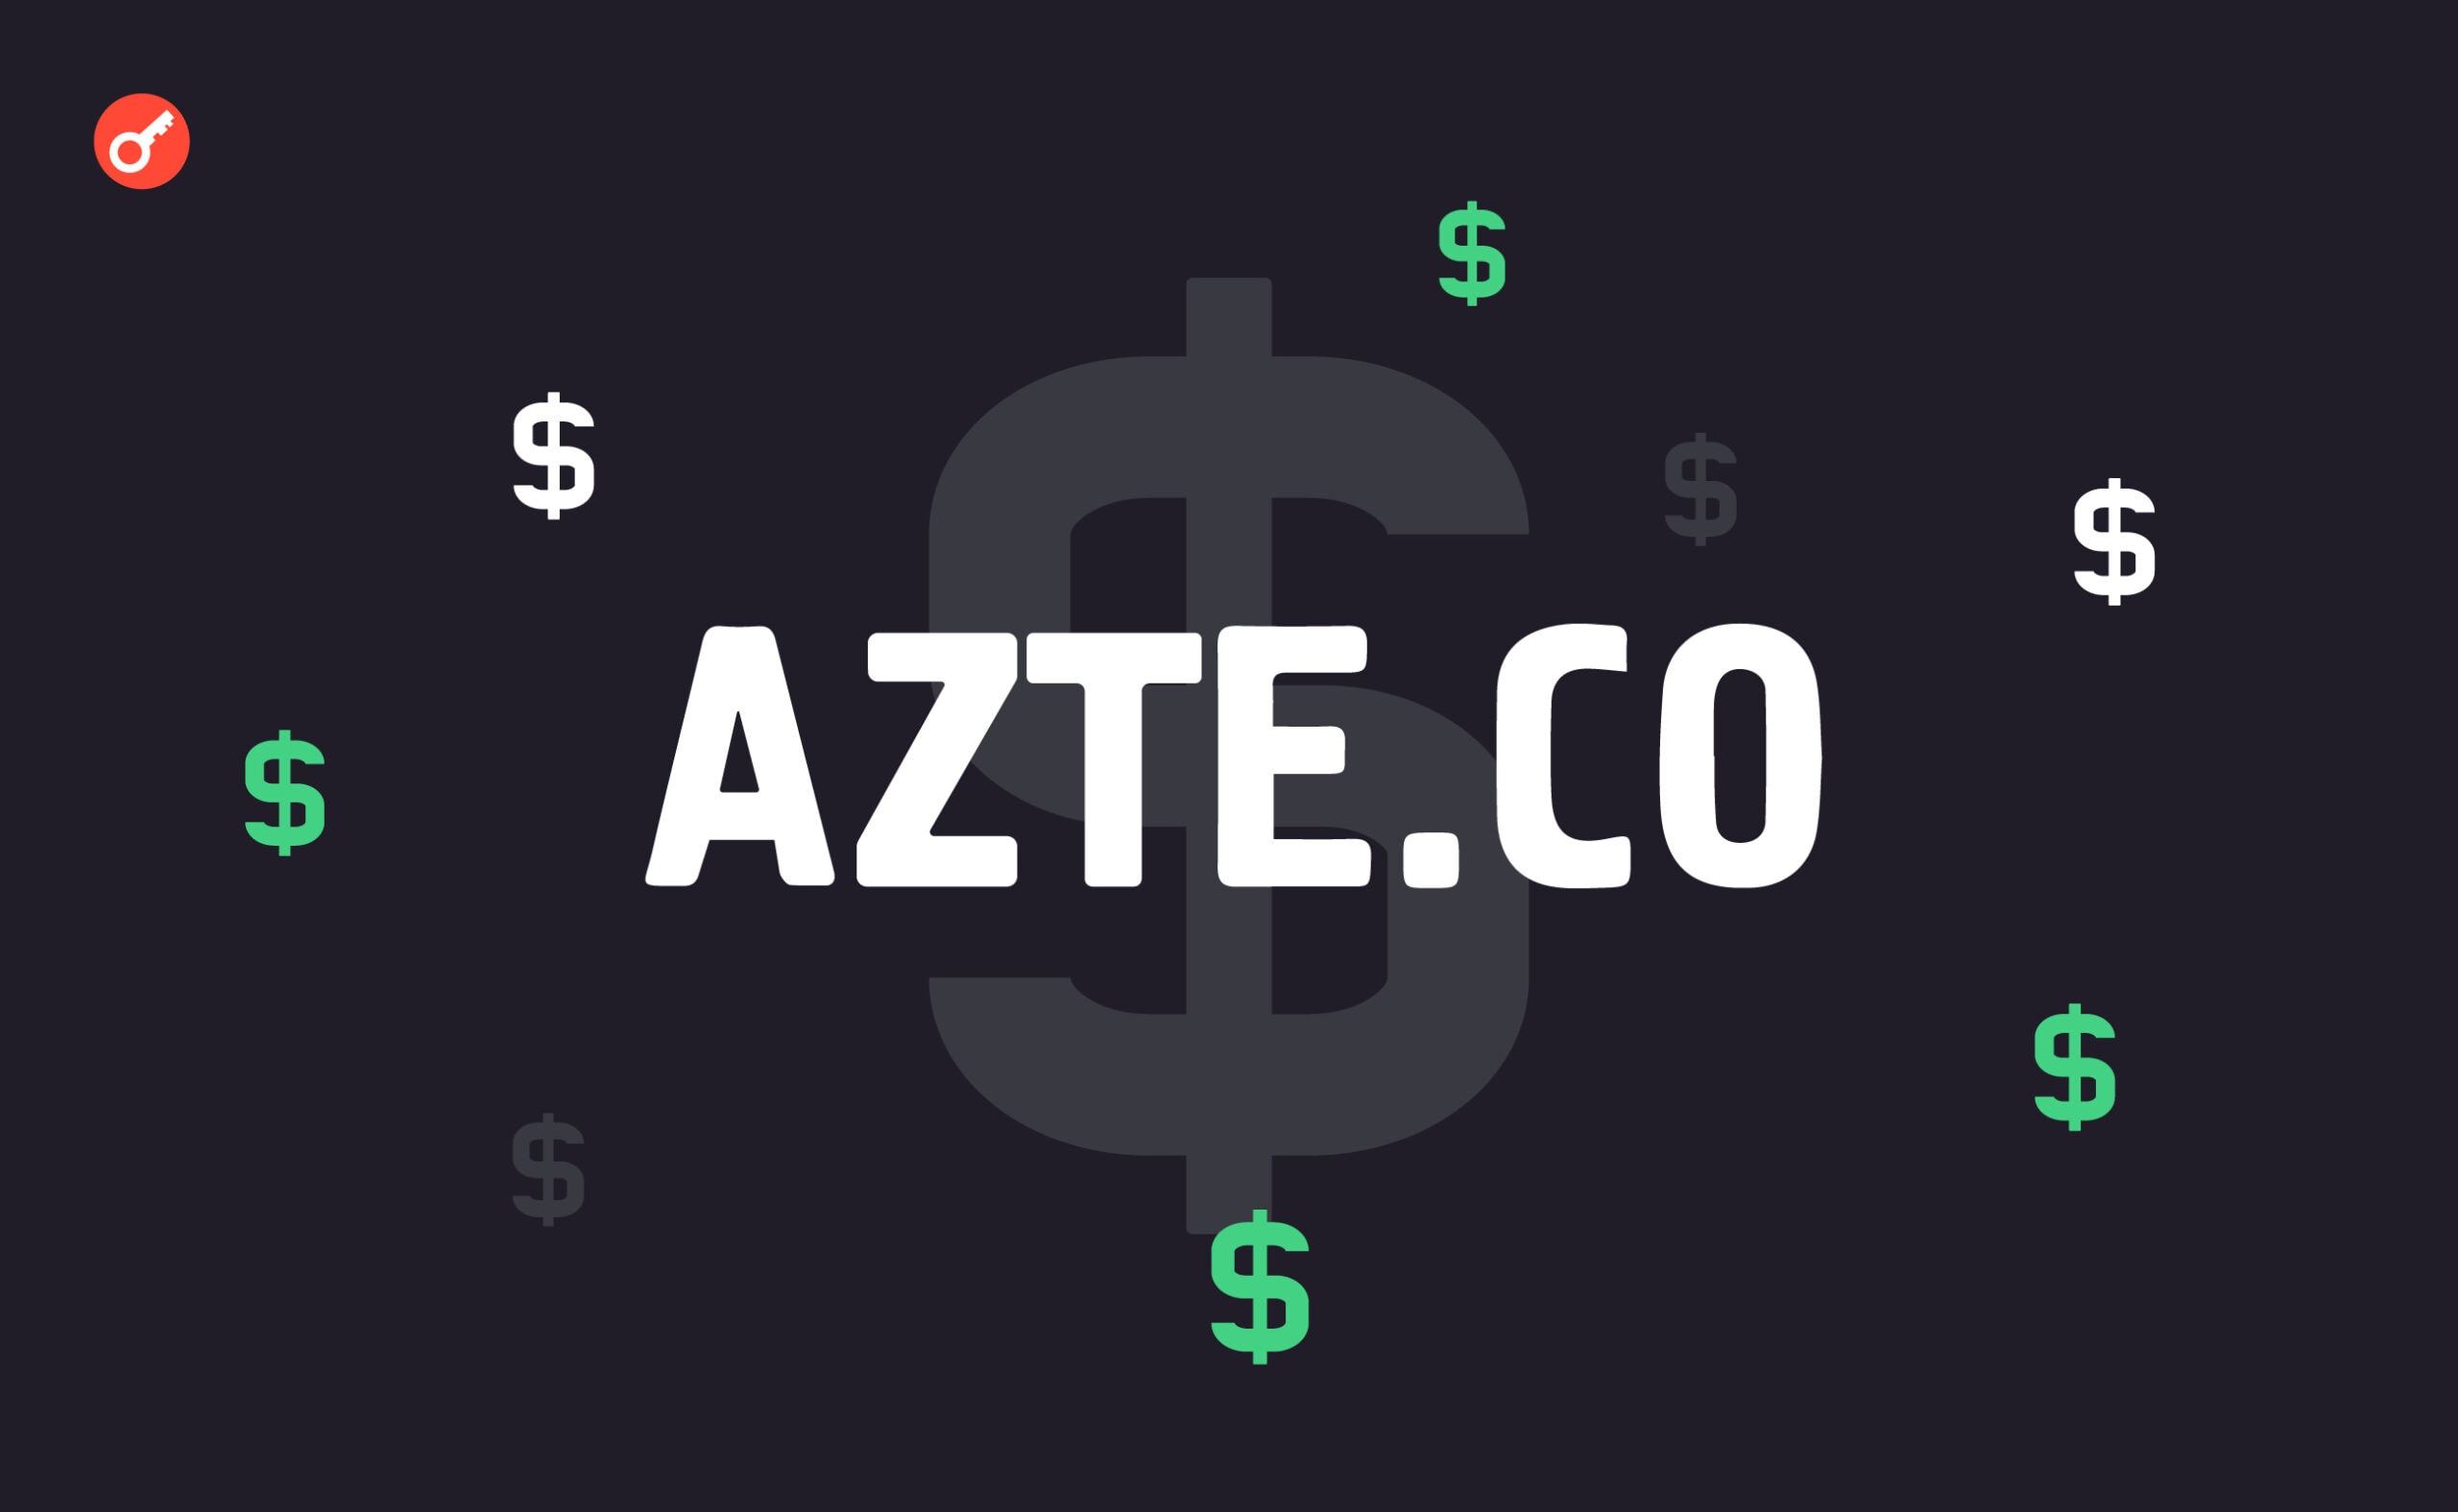 Джек Дорсі інвестував у біткоїн-проект Azteco. Головний колаж новини.